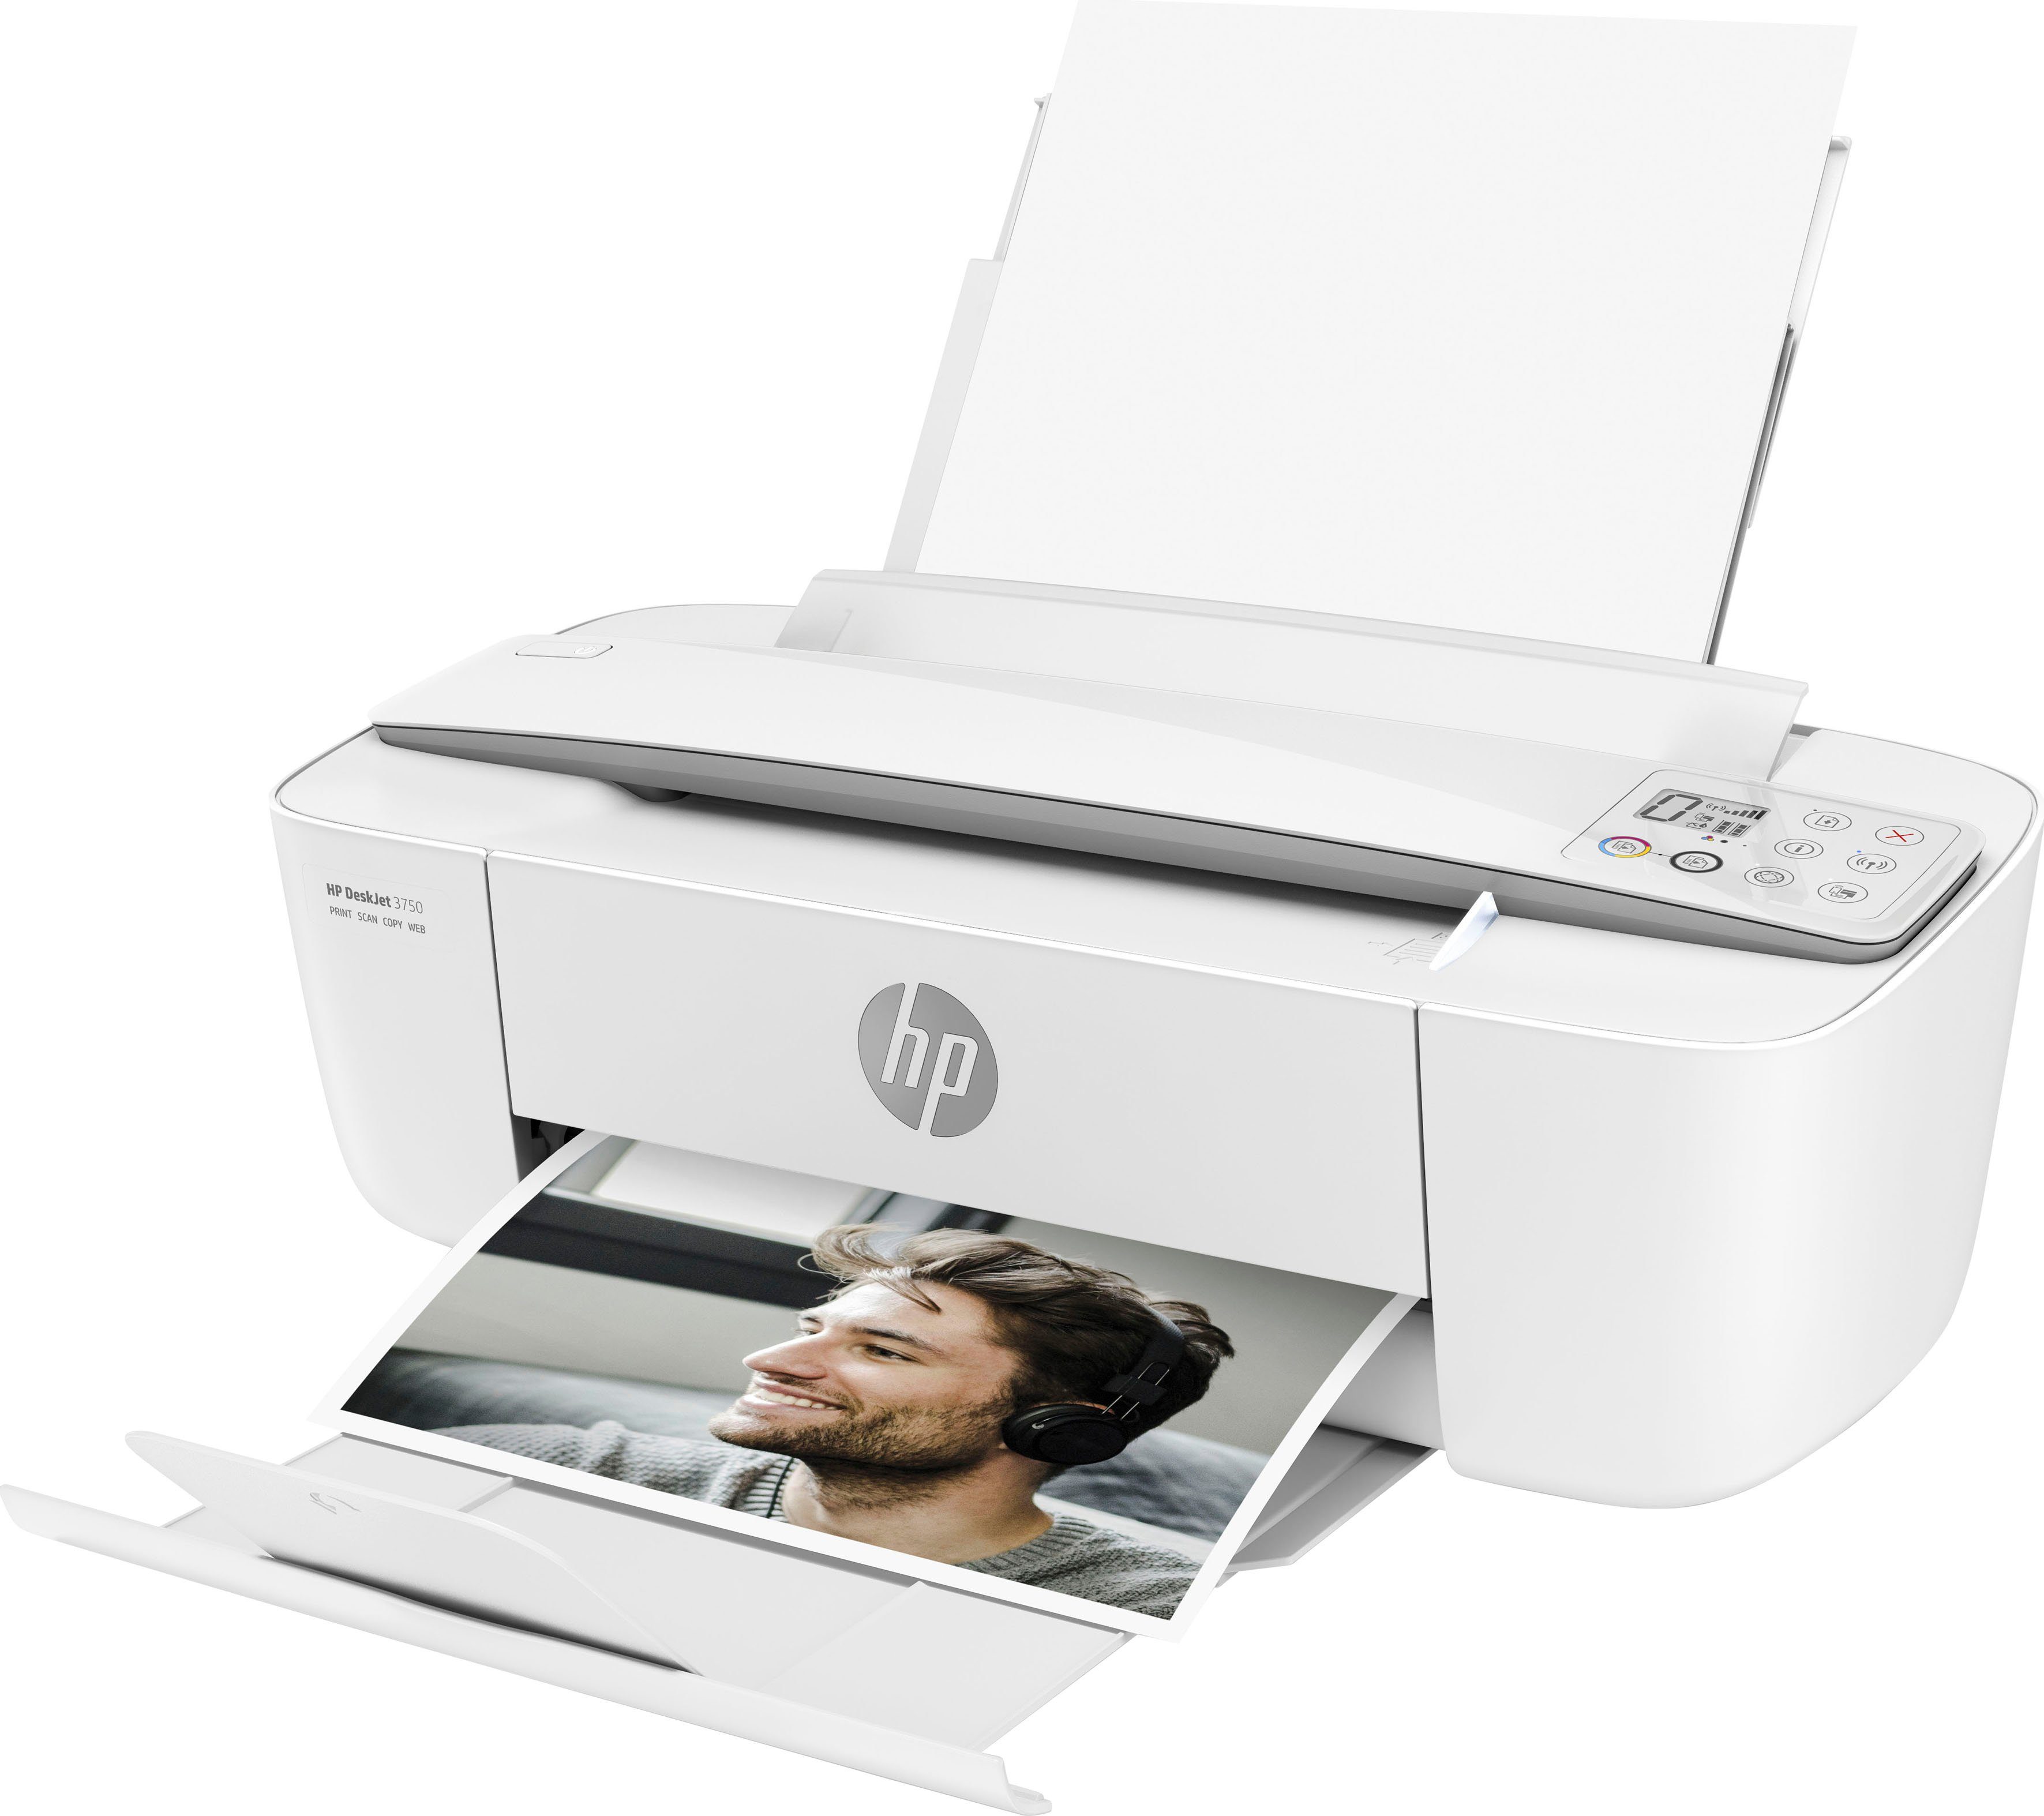 (Wi-Fi), Instant HP+ kompatibel) HP Multifunktionsdrucker, 3750 Ink DeskJet (WLAN Drucker